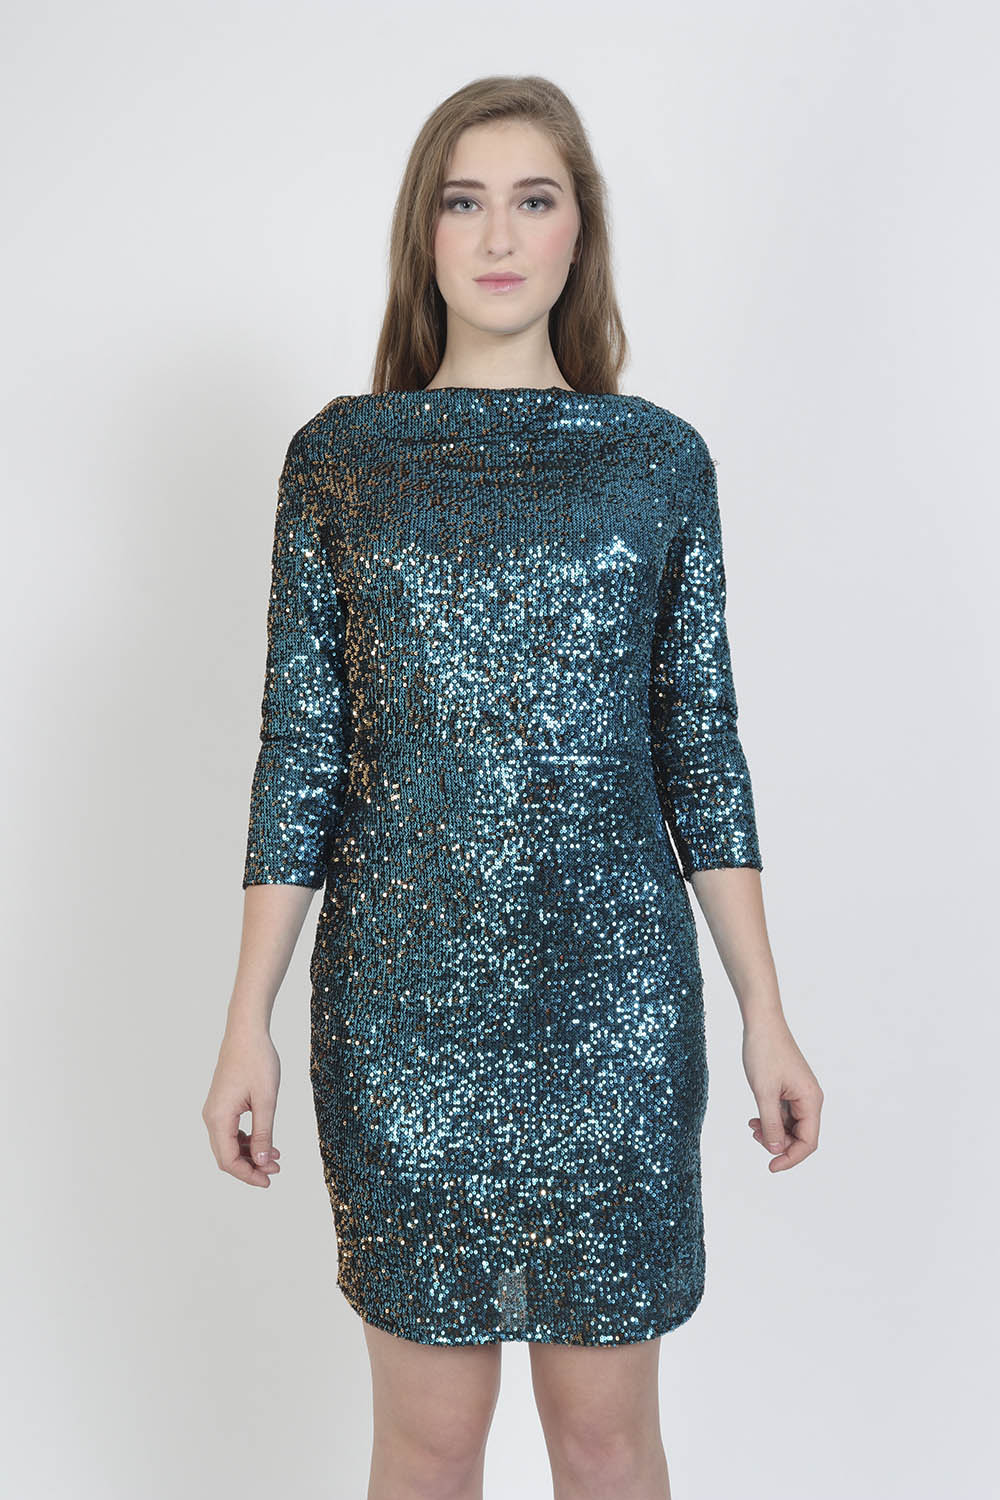 Moonlight Sequin Party Dress -0